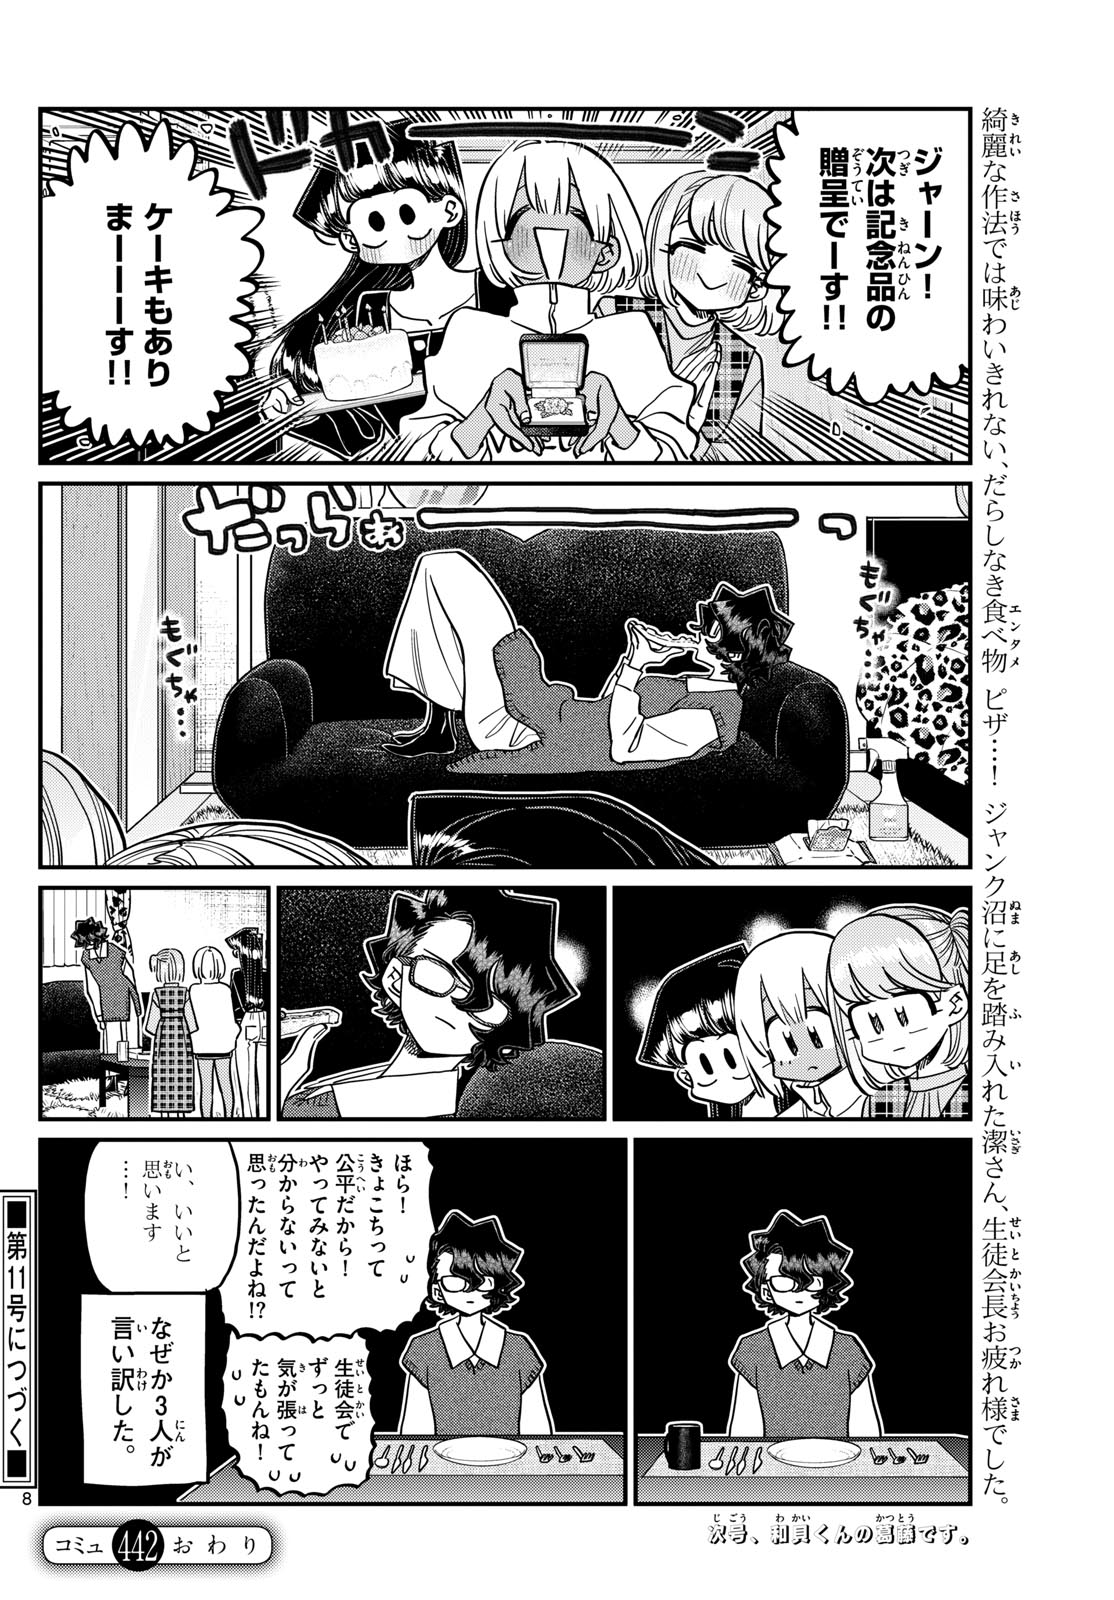 Komi-san wa Komyushou Desu - Chapter 442 - Page 8